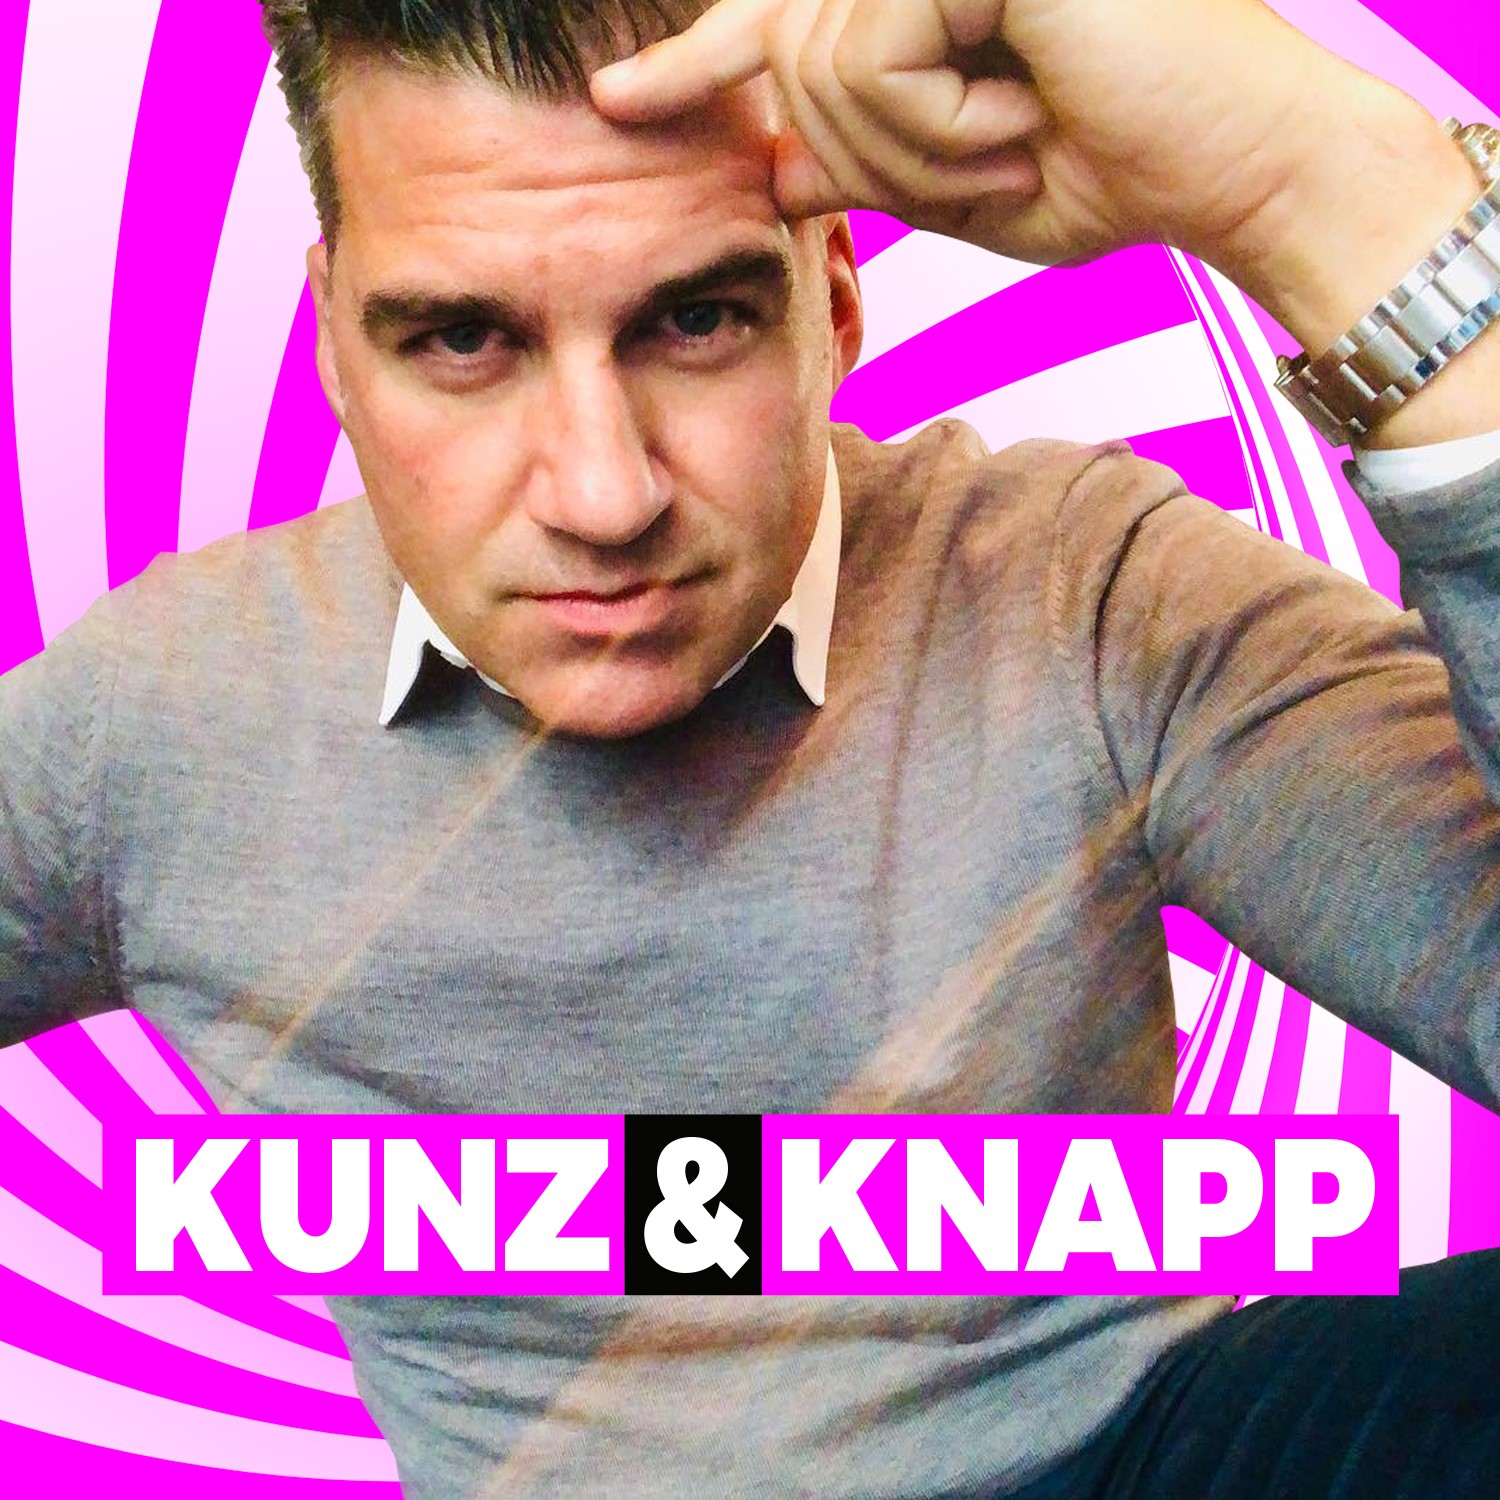 KUNZ & KNAPP